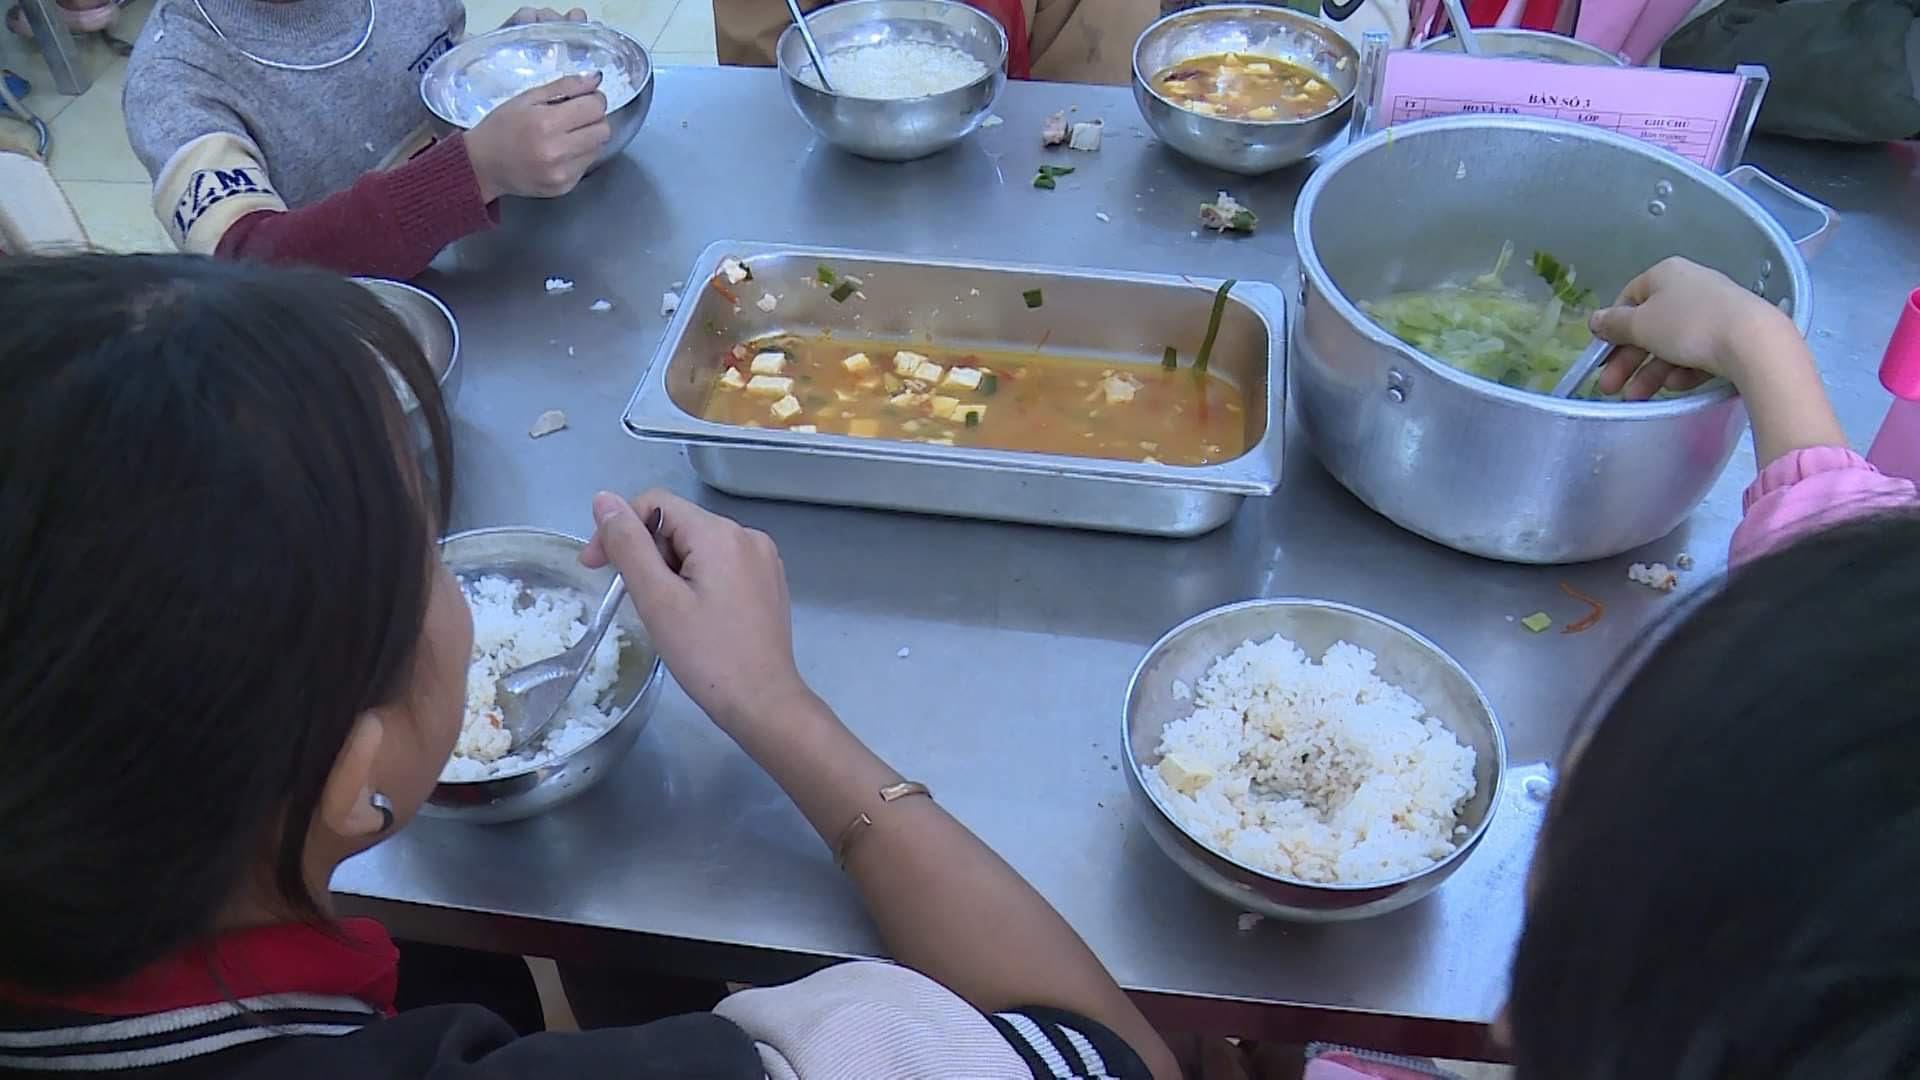  &quot;Vụ 11 học sinh ăn 2 gói mì tôm chan cơm ở Lào Cai&quot; đã có thêm thông tin mới - Ảnh 2.